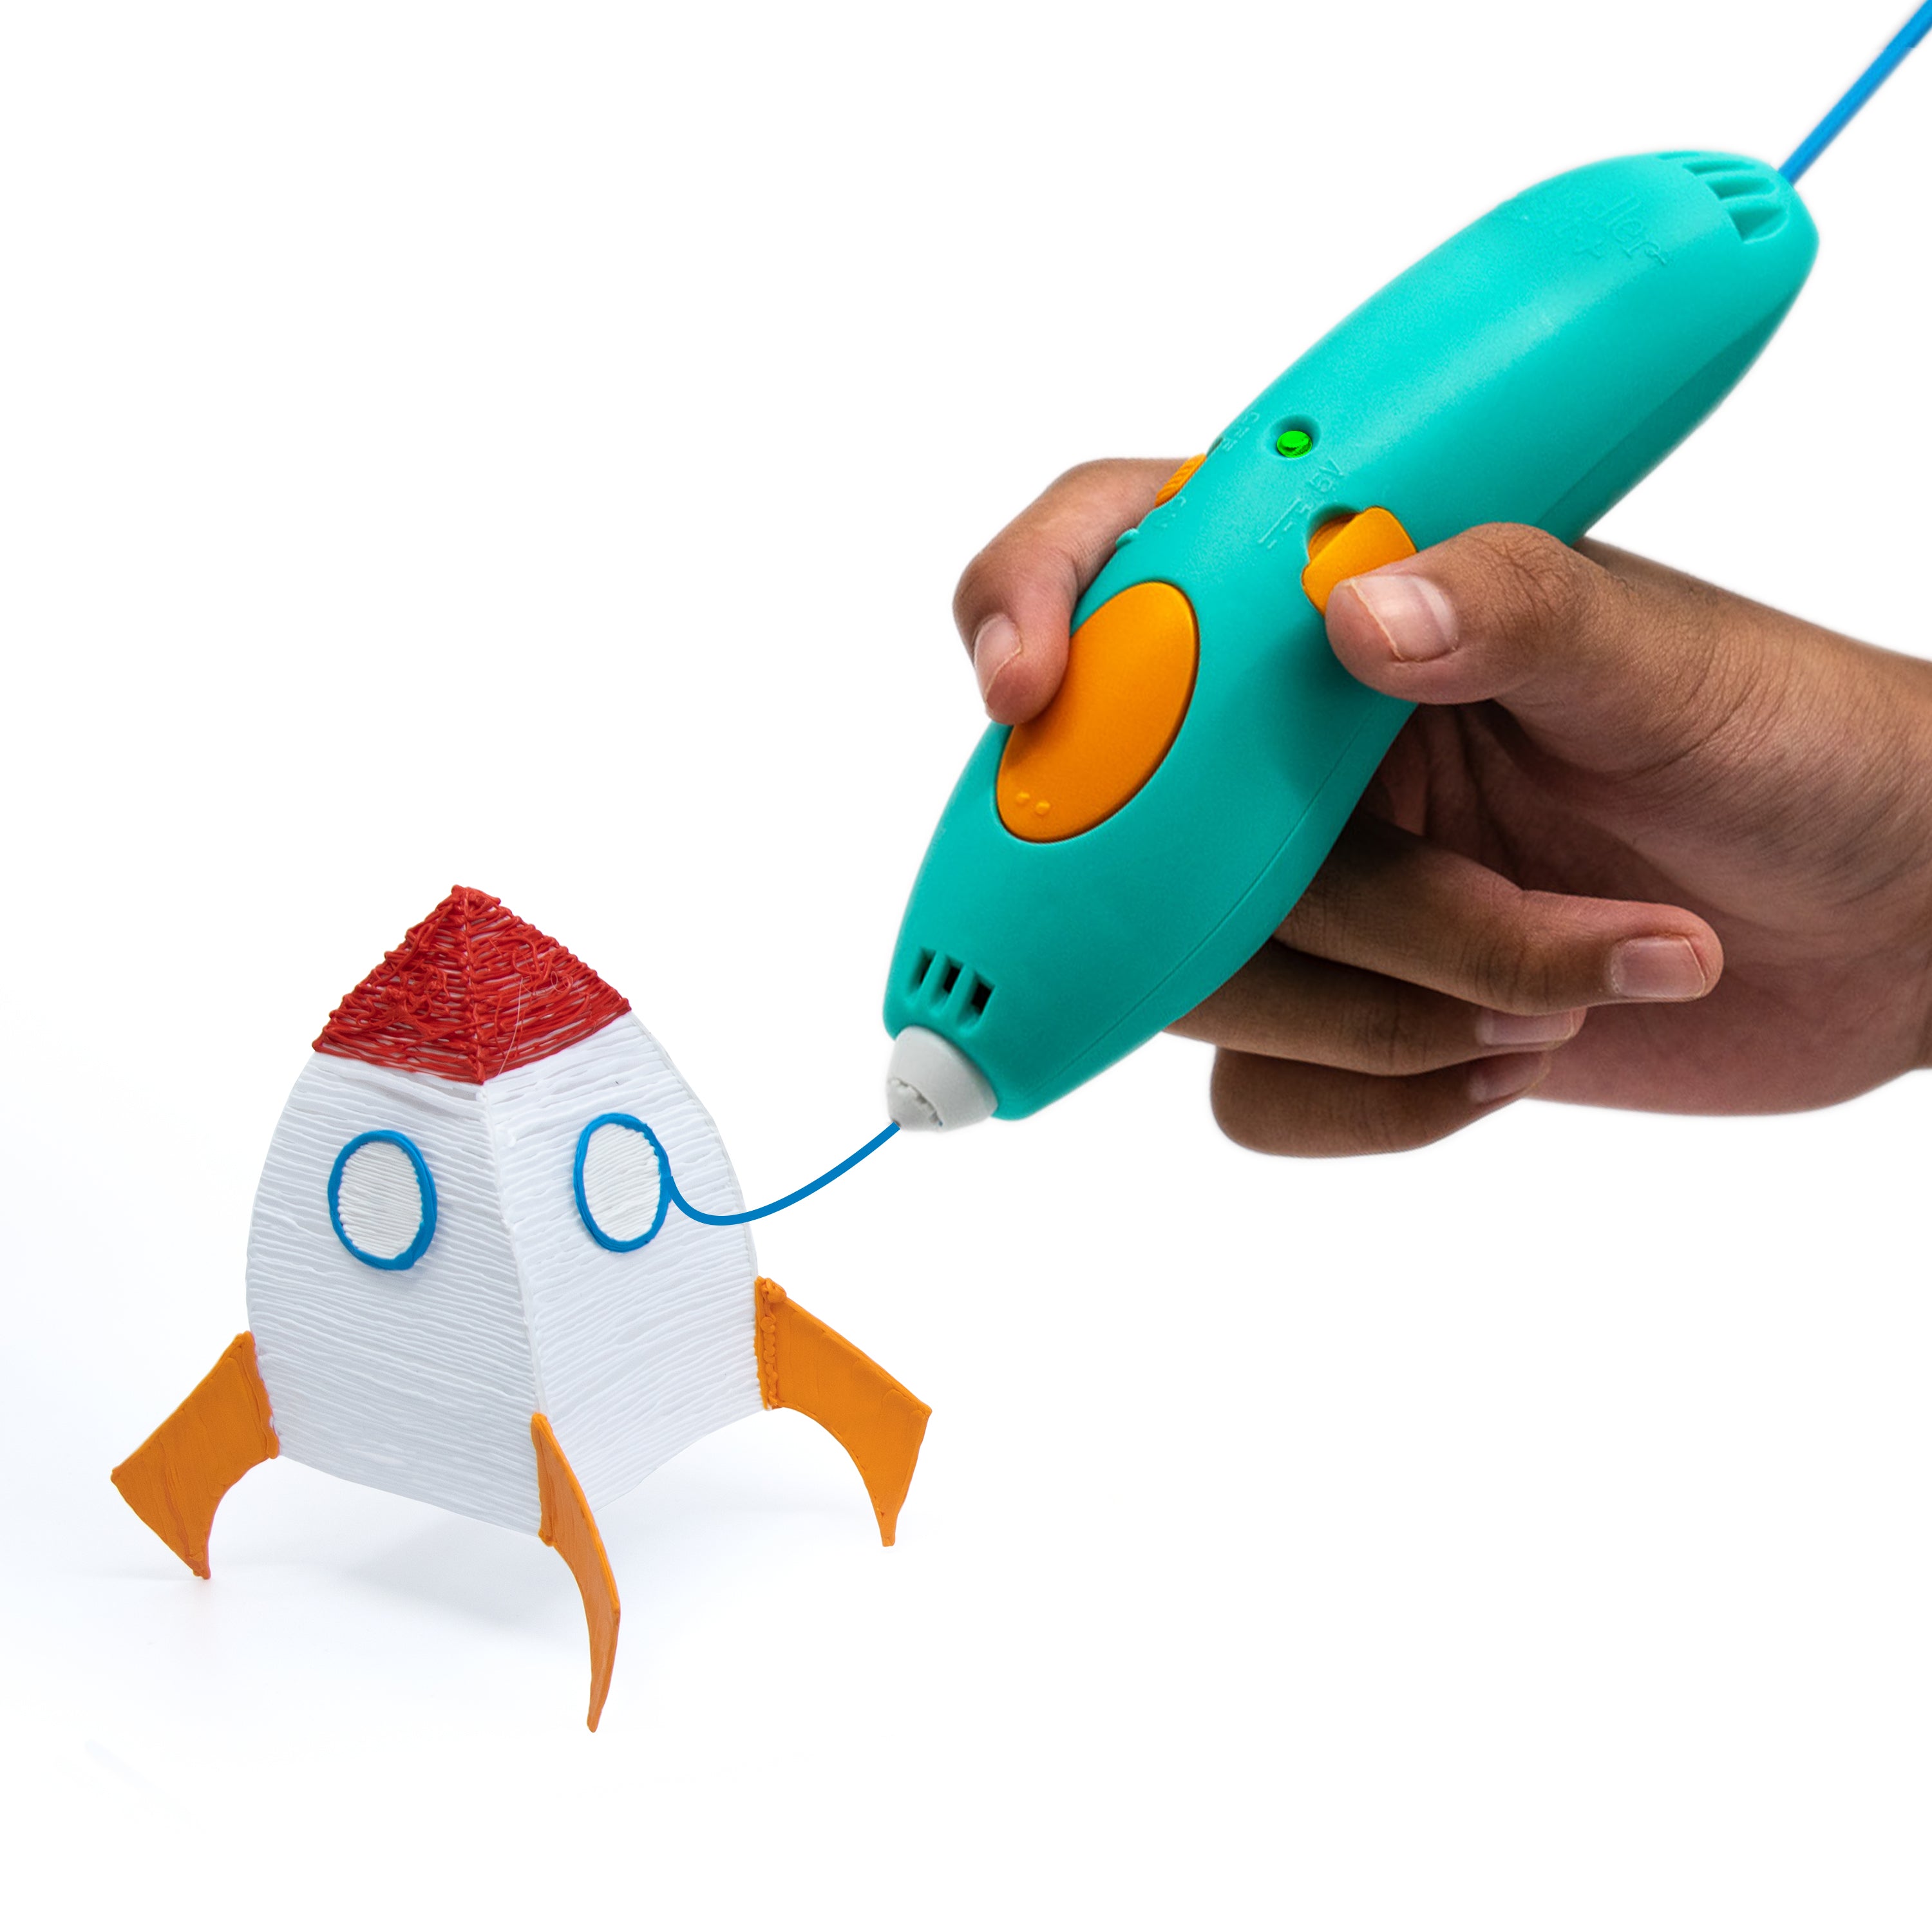 3Doodler Start Ultimate Box 3D Printing Pen Set for Kids, Ages 8+